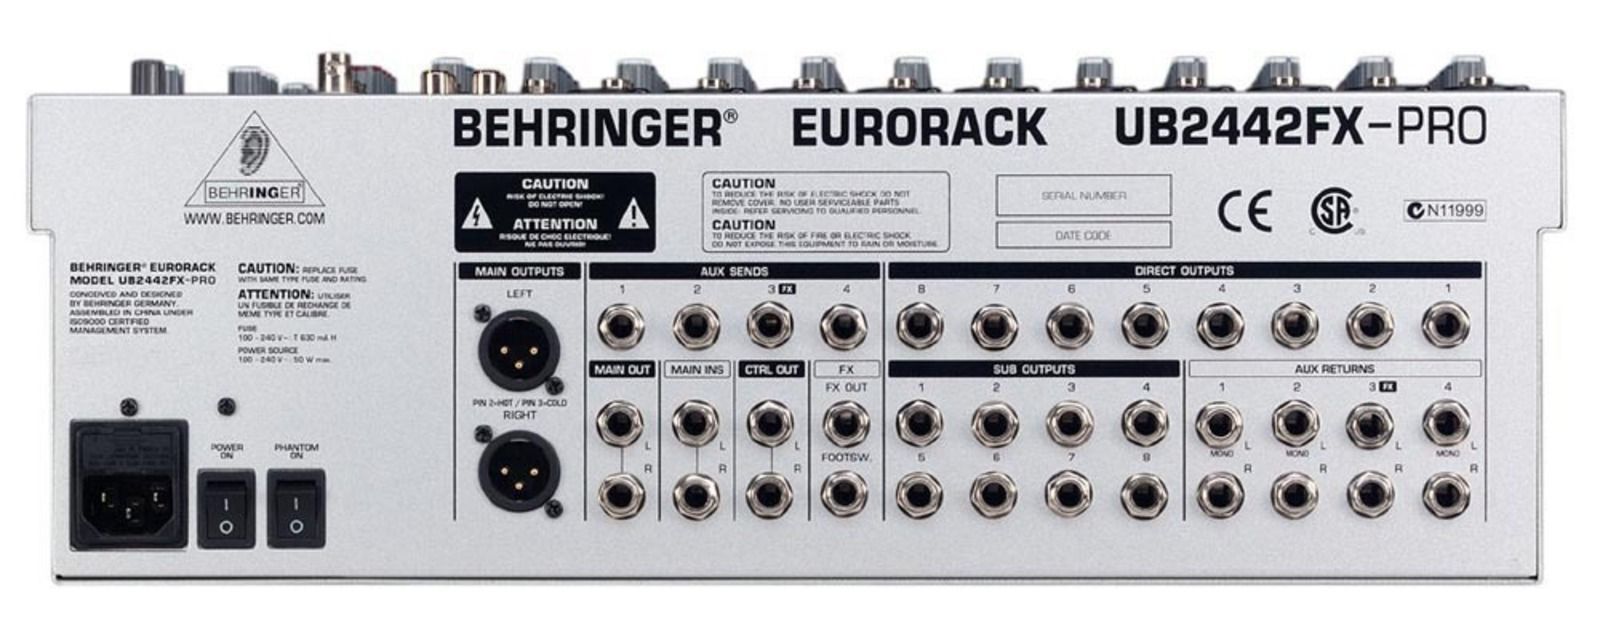 Behringer eurorack ub2442fx-pro manual